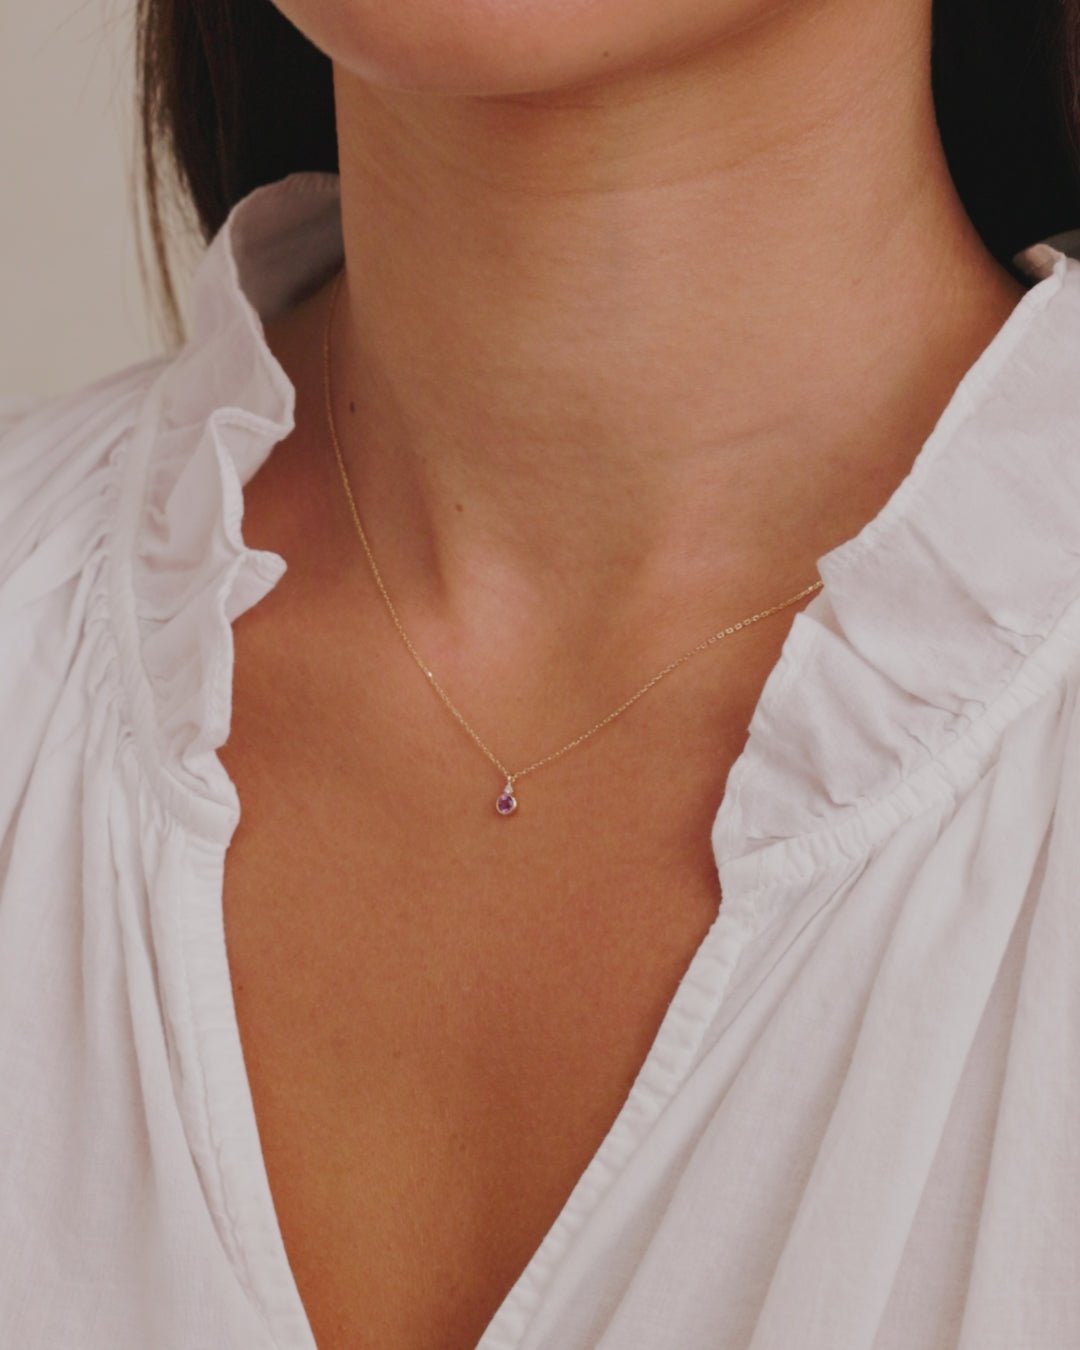 Amethyst Birthstone Necklace || option::14k Solid Gold, Amethyst - February